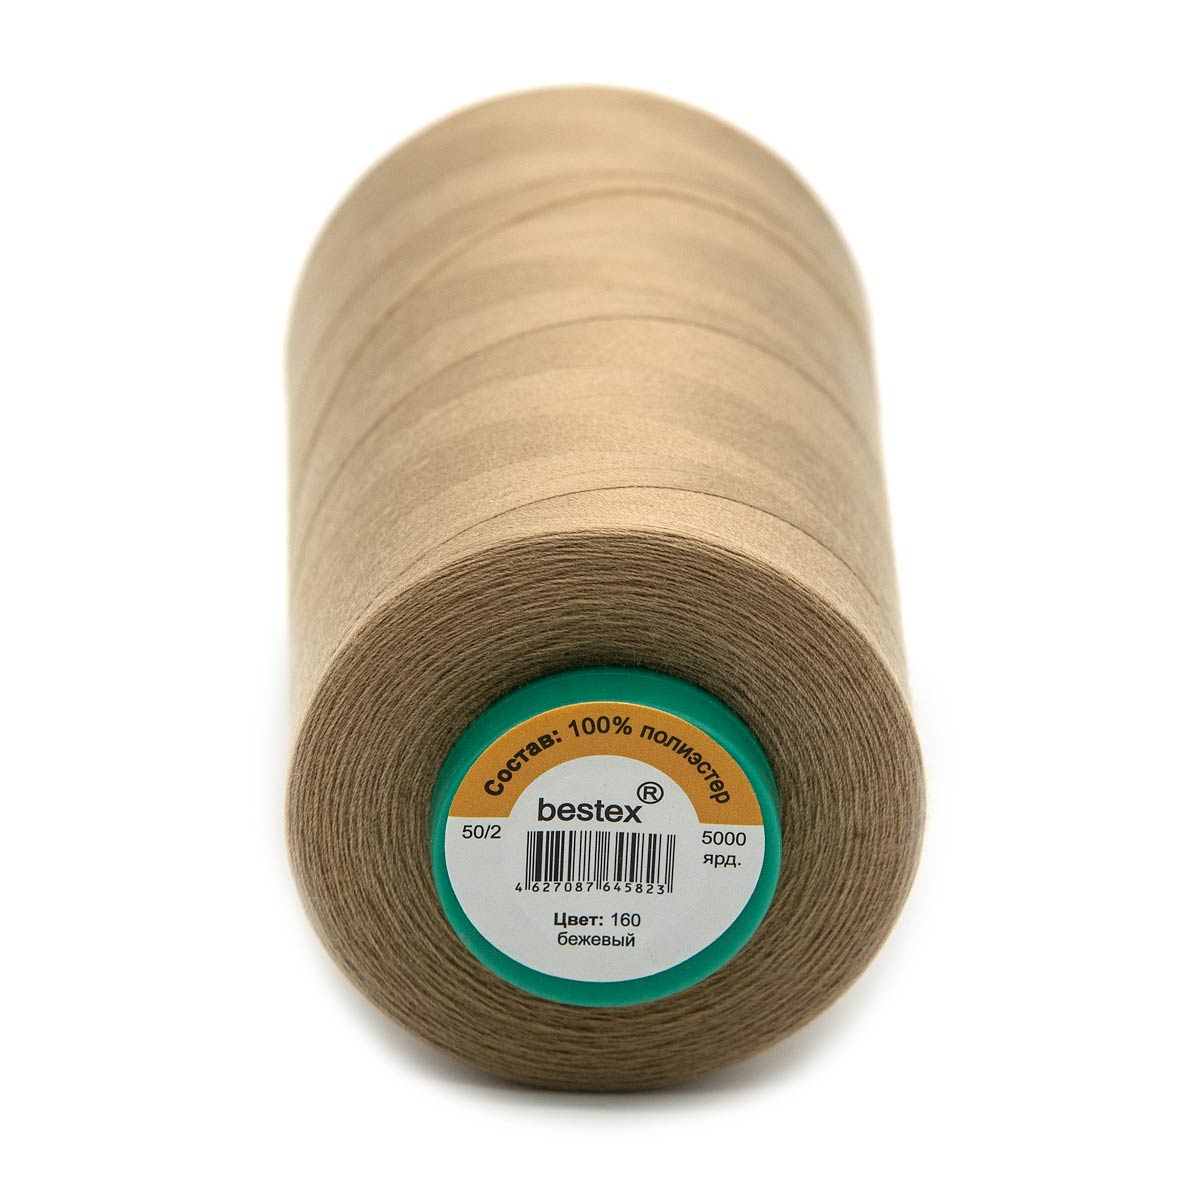 Нитки Bestex промышленные для тонких тканей для шитья и рукоделия 50/2 5000 ярд 1 шт 160 бежевый - фото 3